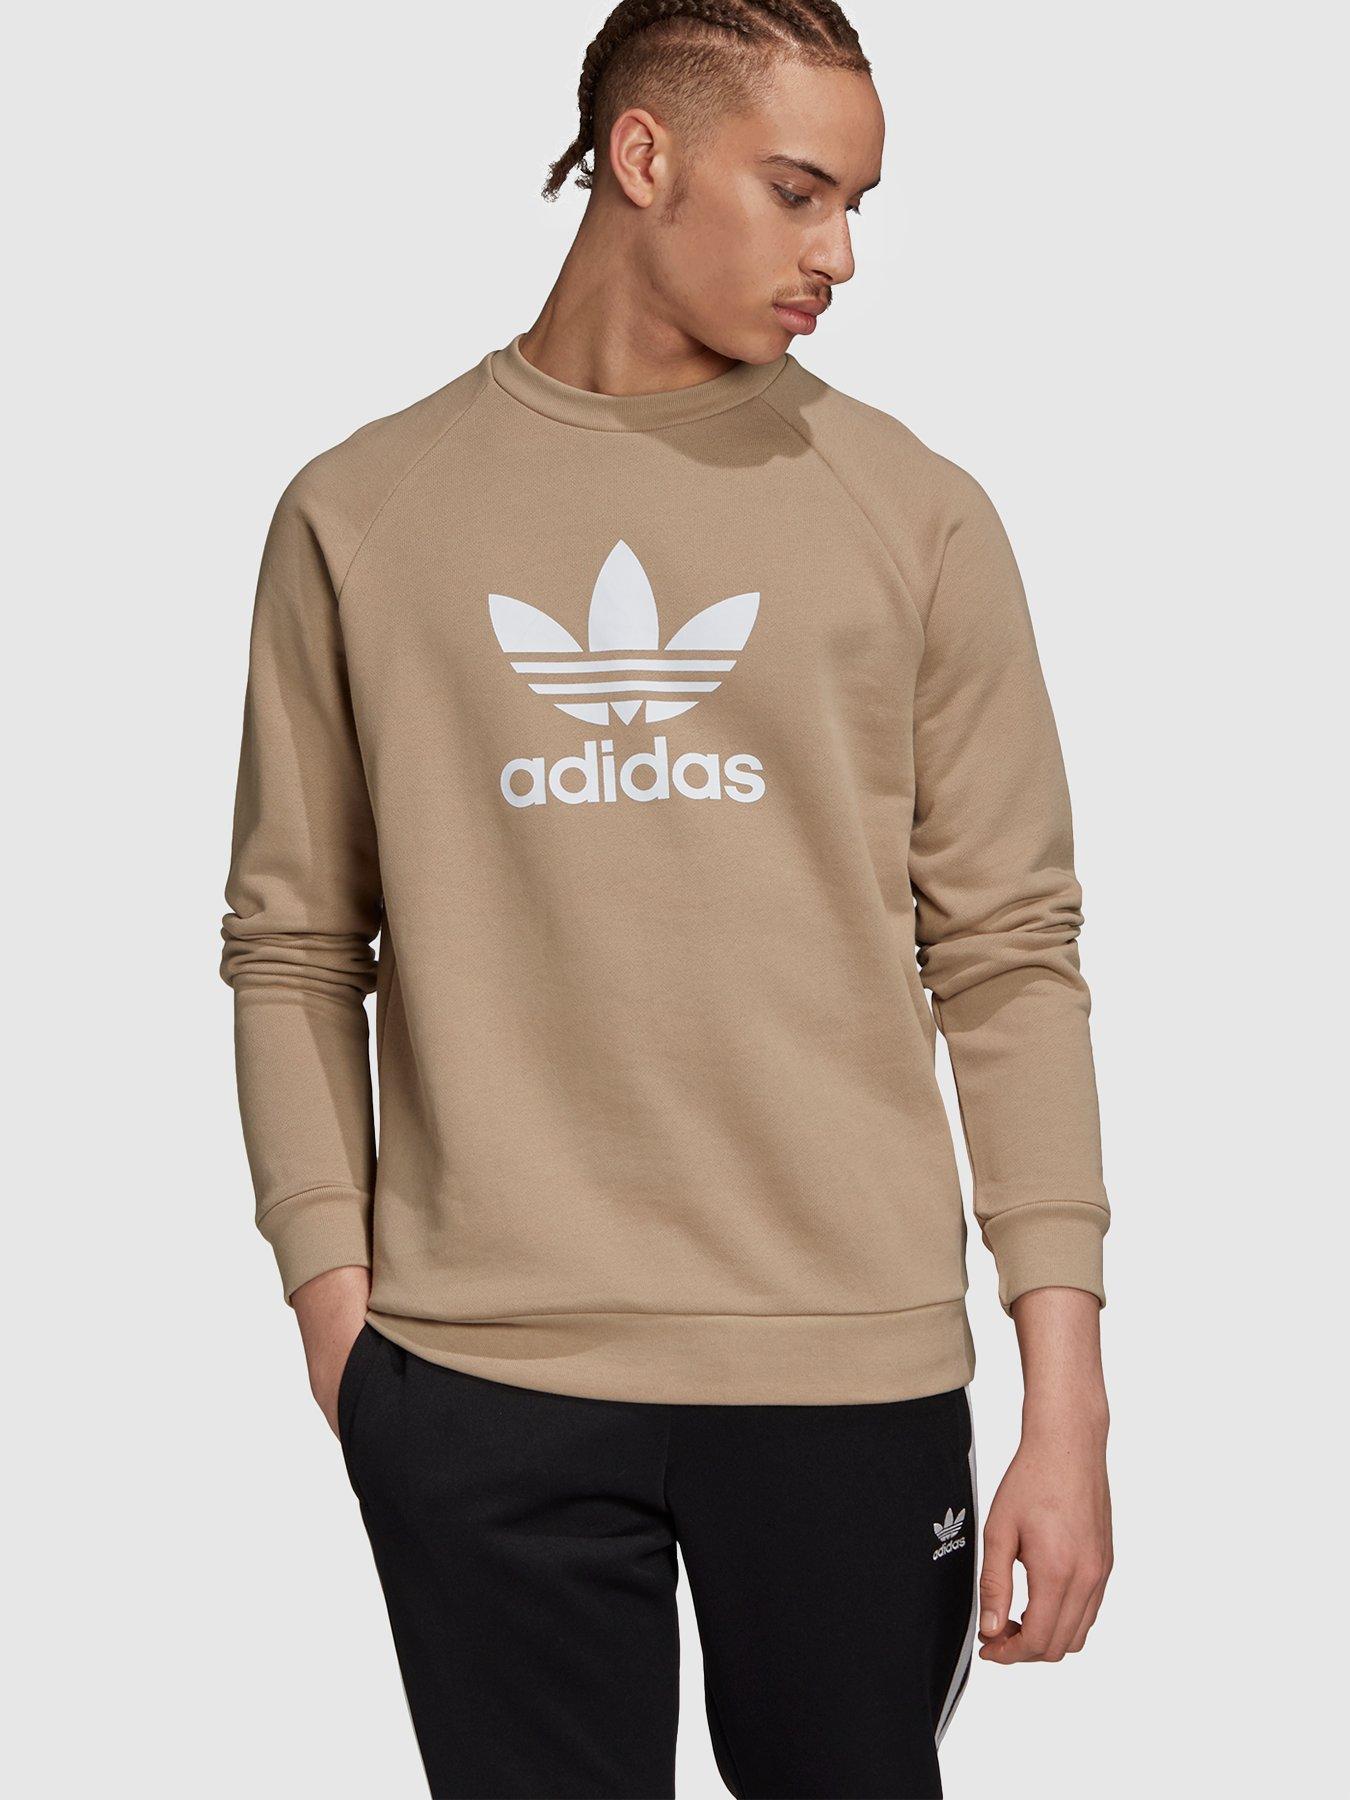 adidas originals trefoil crew neck sweatshirt in khaki